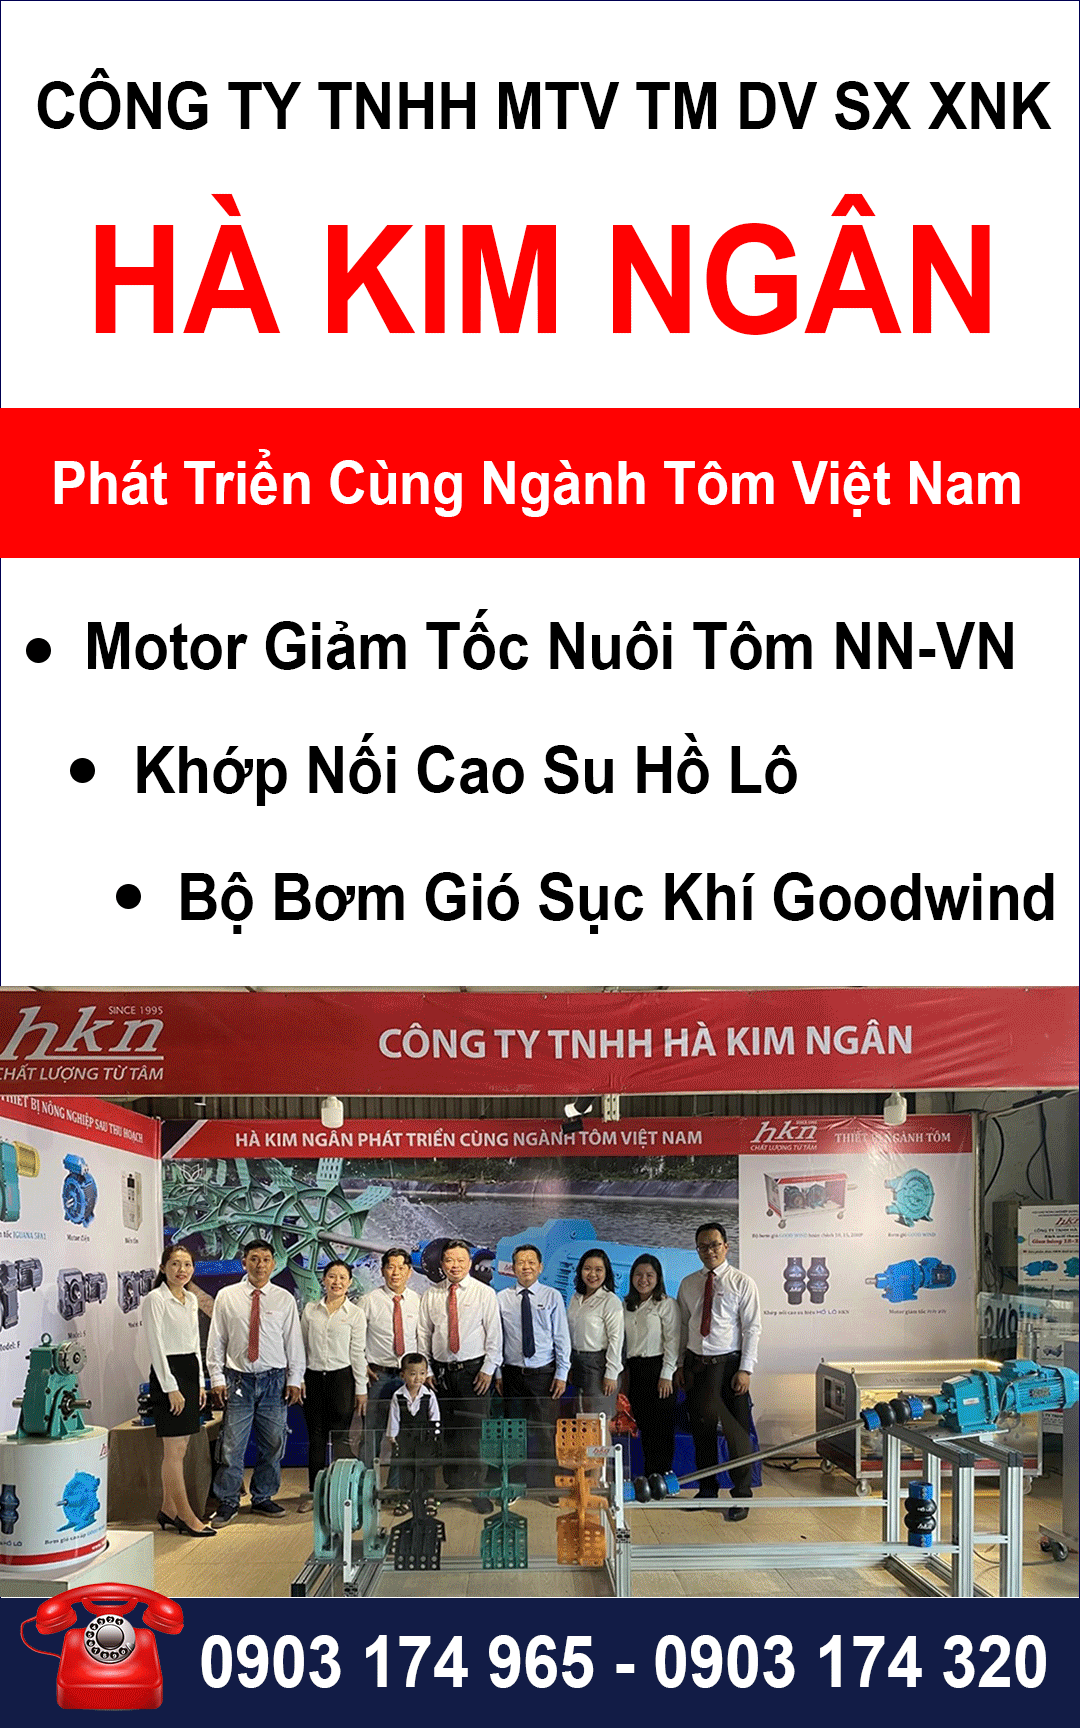 Công Ty TNHH MTV TM DV SX XNK Hà Kim Ngân